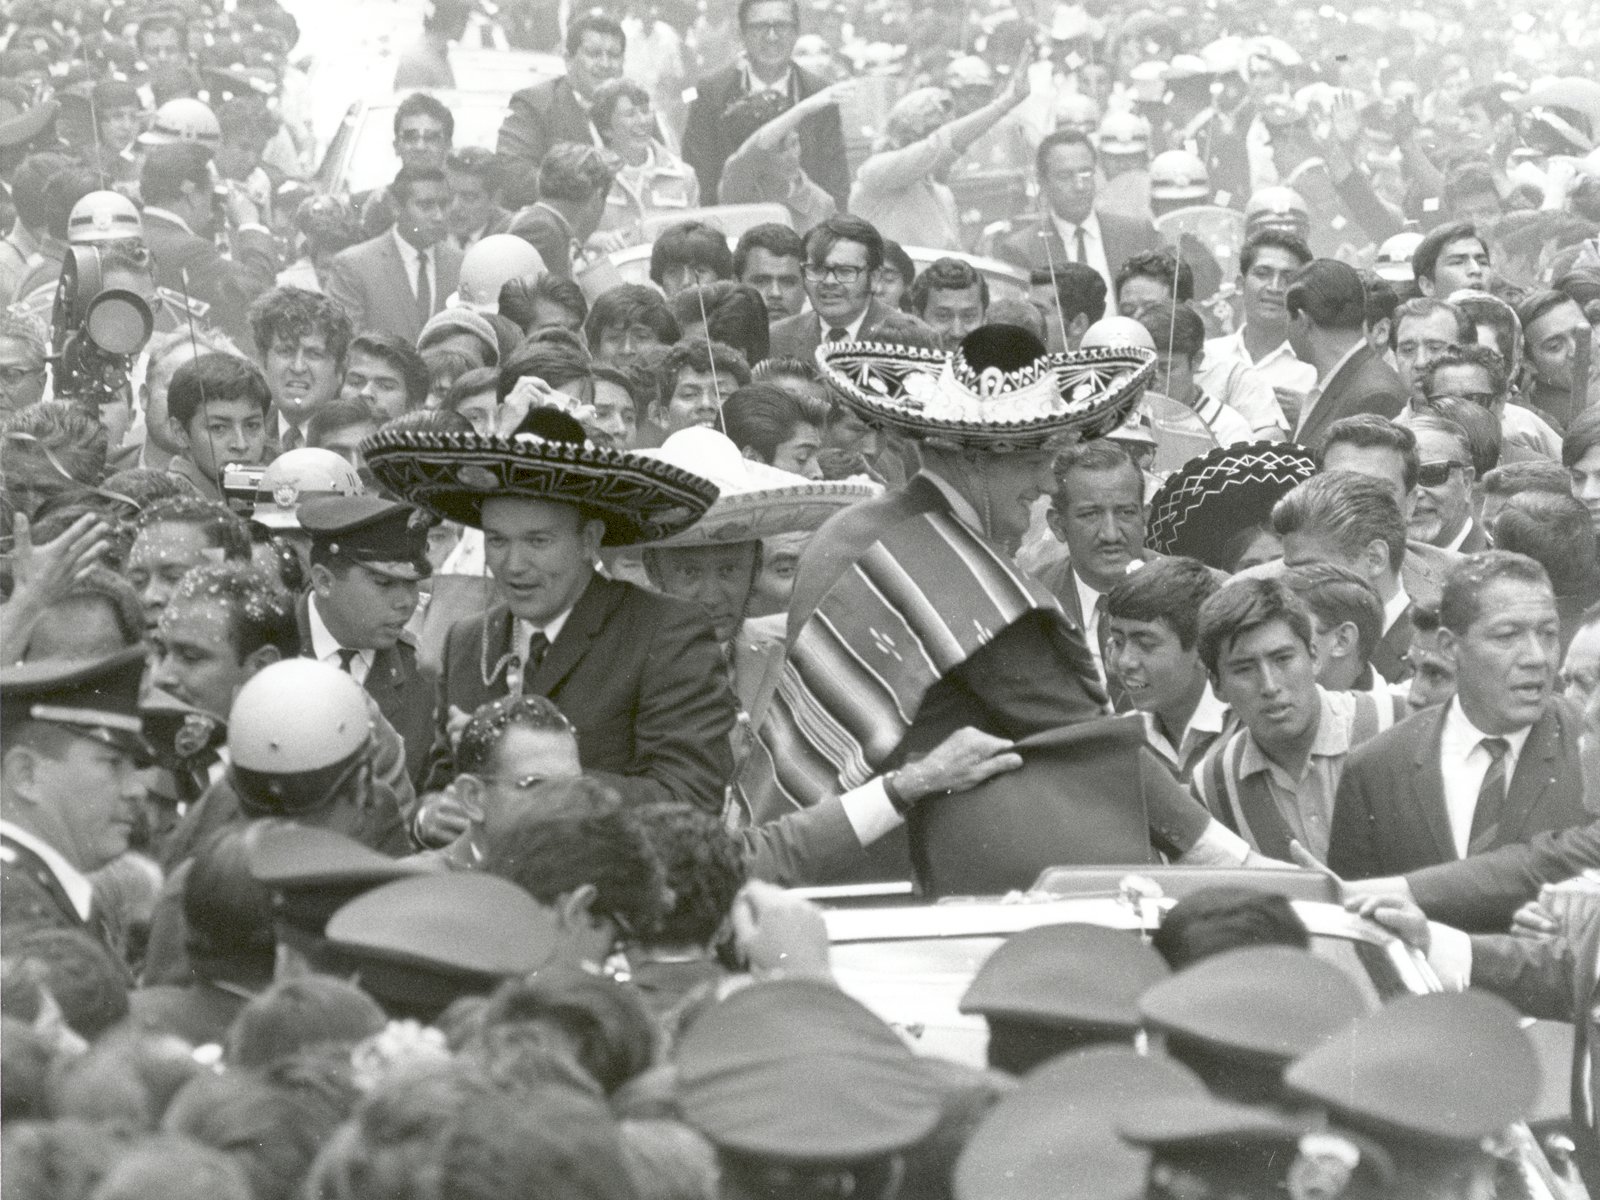 壁纸1600x1200One Giant Leap for Mankind  Apollo 11 Astronauts Swarmed by Thousands In Mexico City Parade 墨西哥城的庆祝游行壁纸 阿波罗11号登月40周年纪念壁纸壁纸 阿波罗11号登月40周年纪念壁纸图片 阿波罗11号登月40周年纪念壁纸素材 人文壁纸 人文图库 人文图片素材桌面壁纸